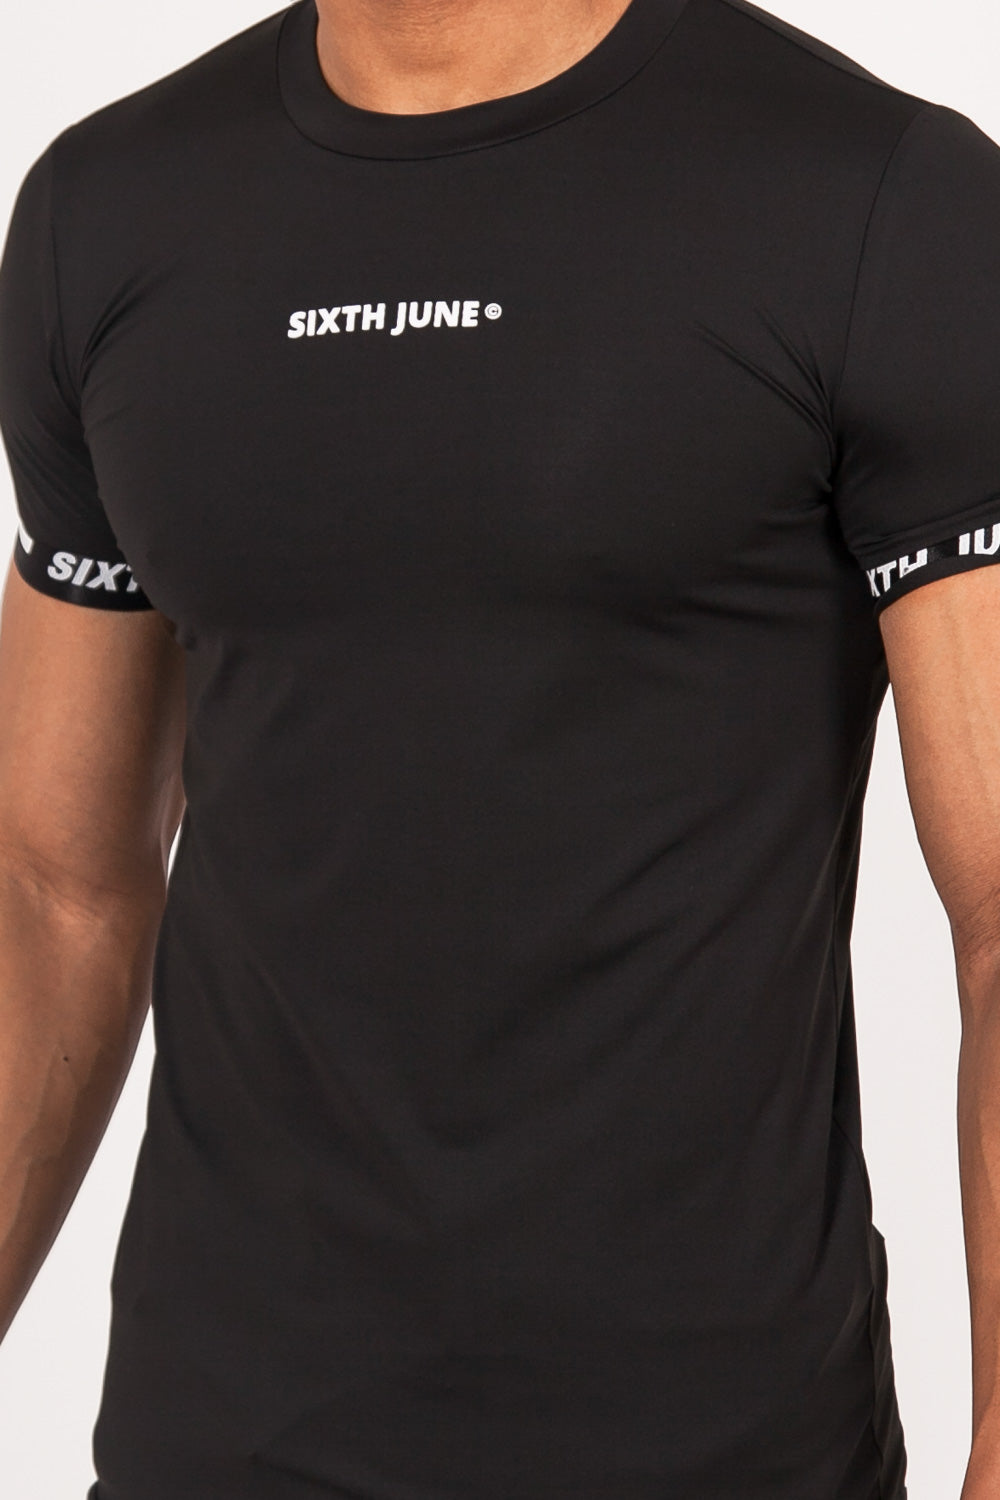 Sixth June - T-shirt moulant logo élastique noir